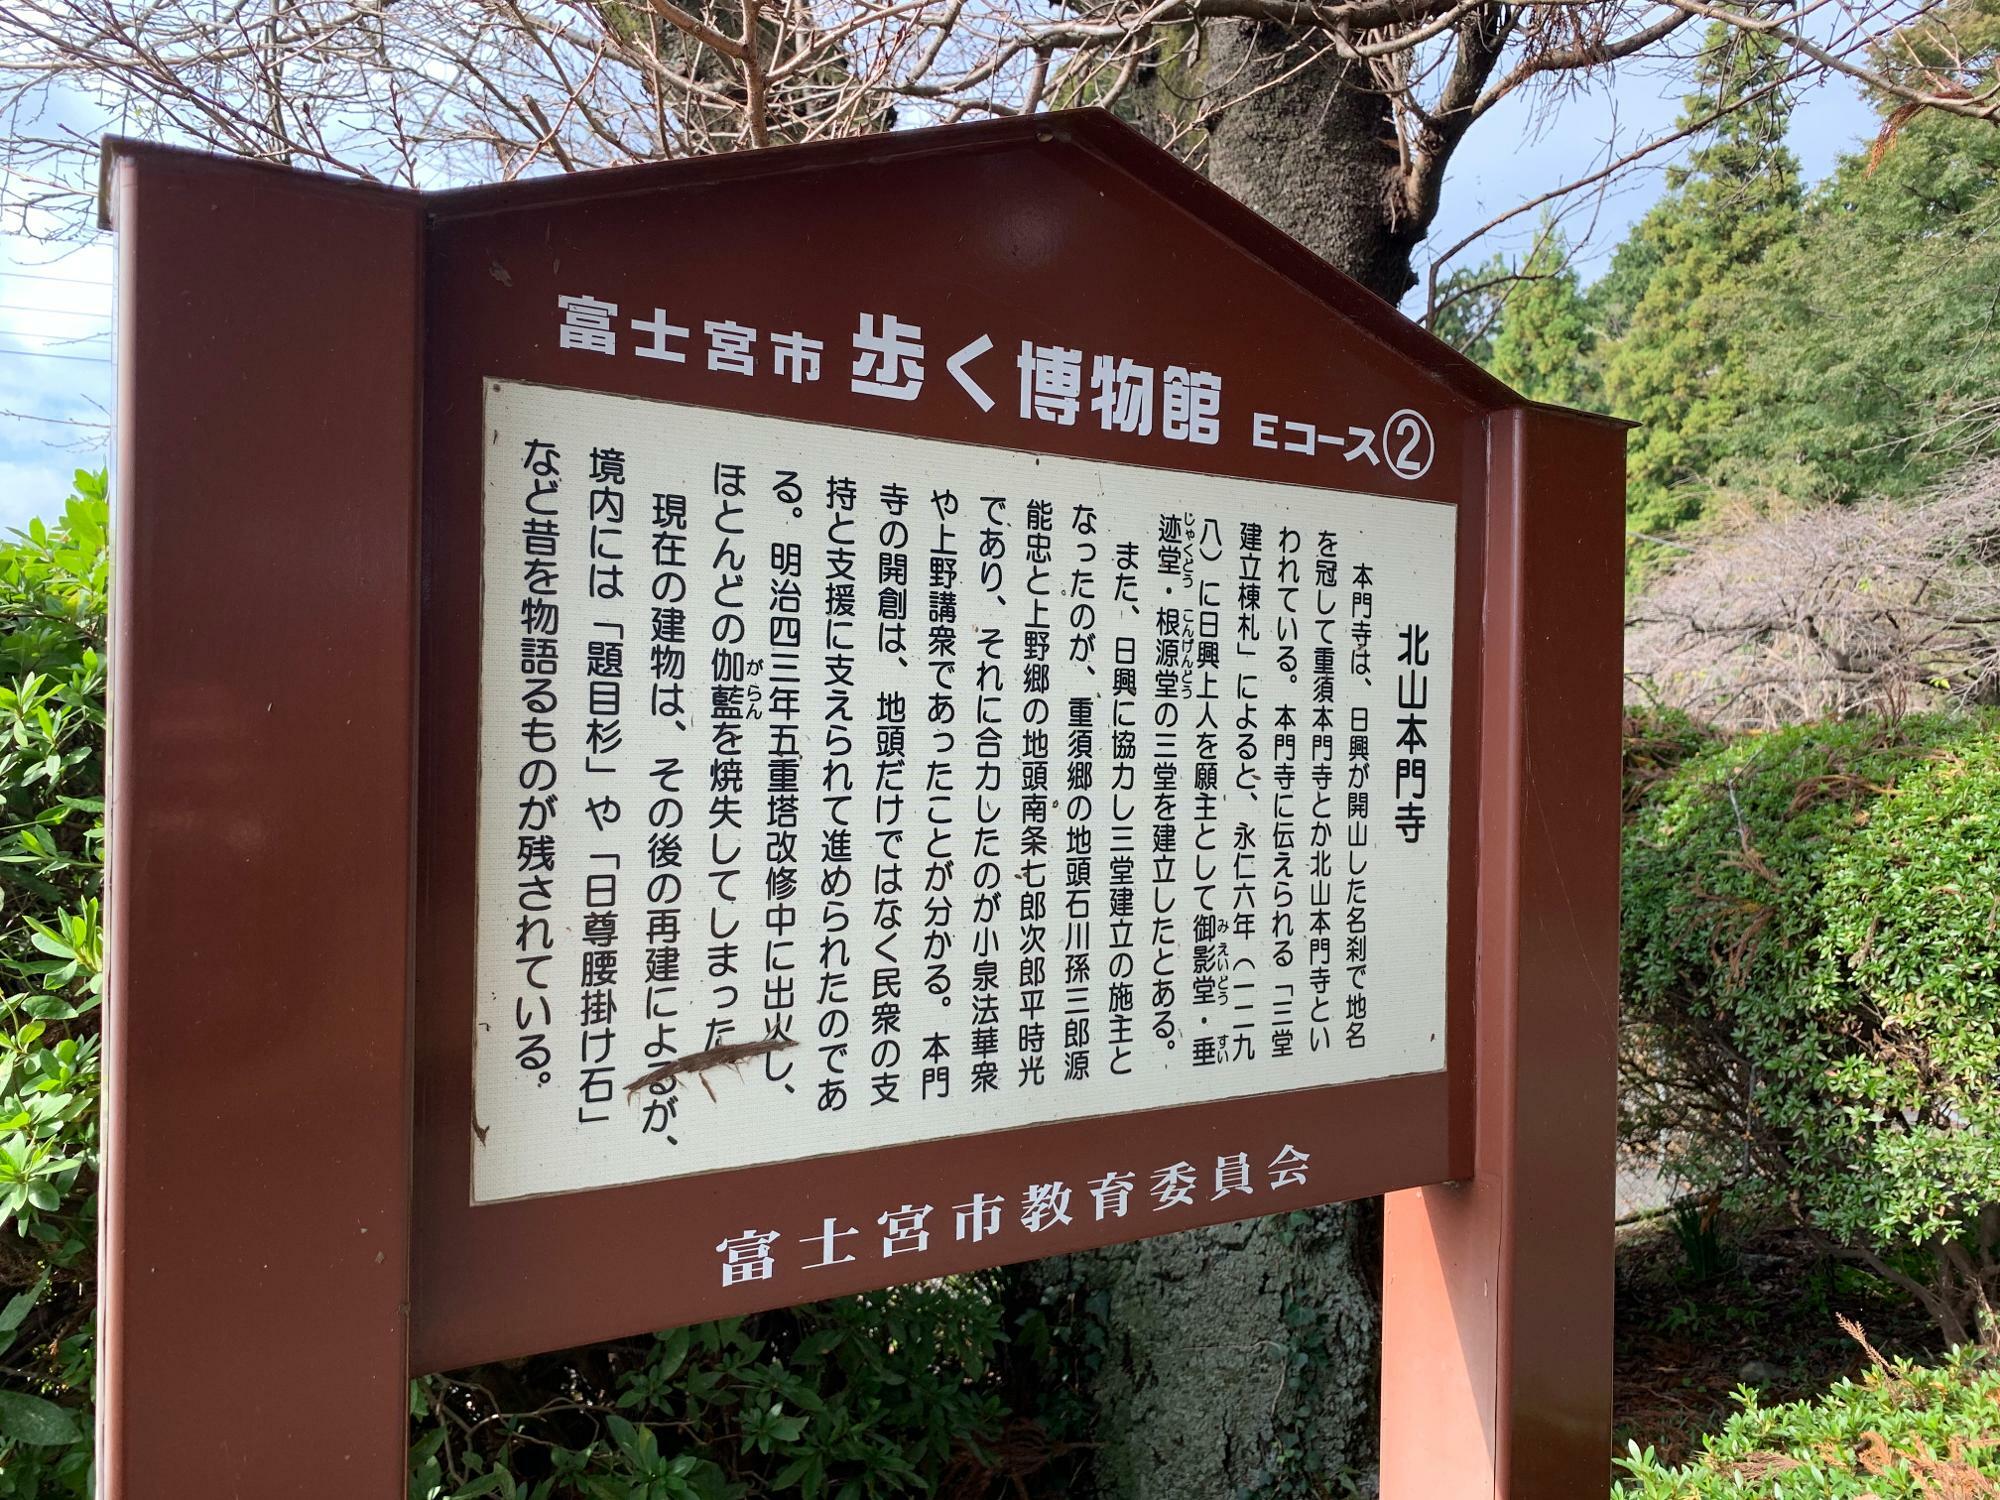 北山本門寺は歩く博物館にもなっています